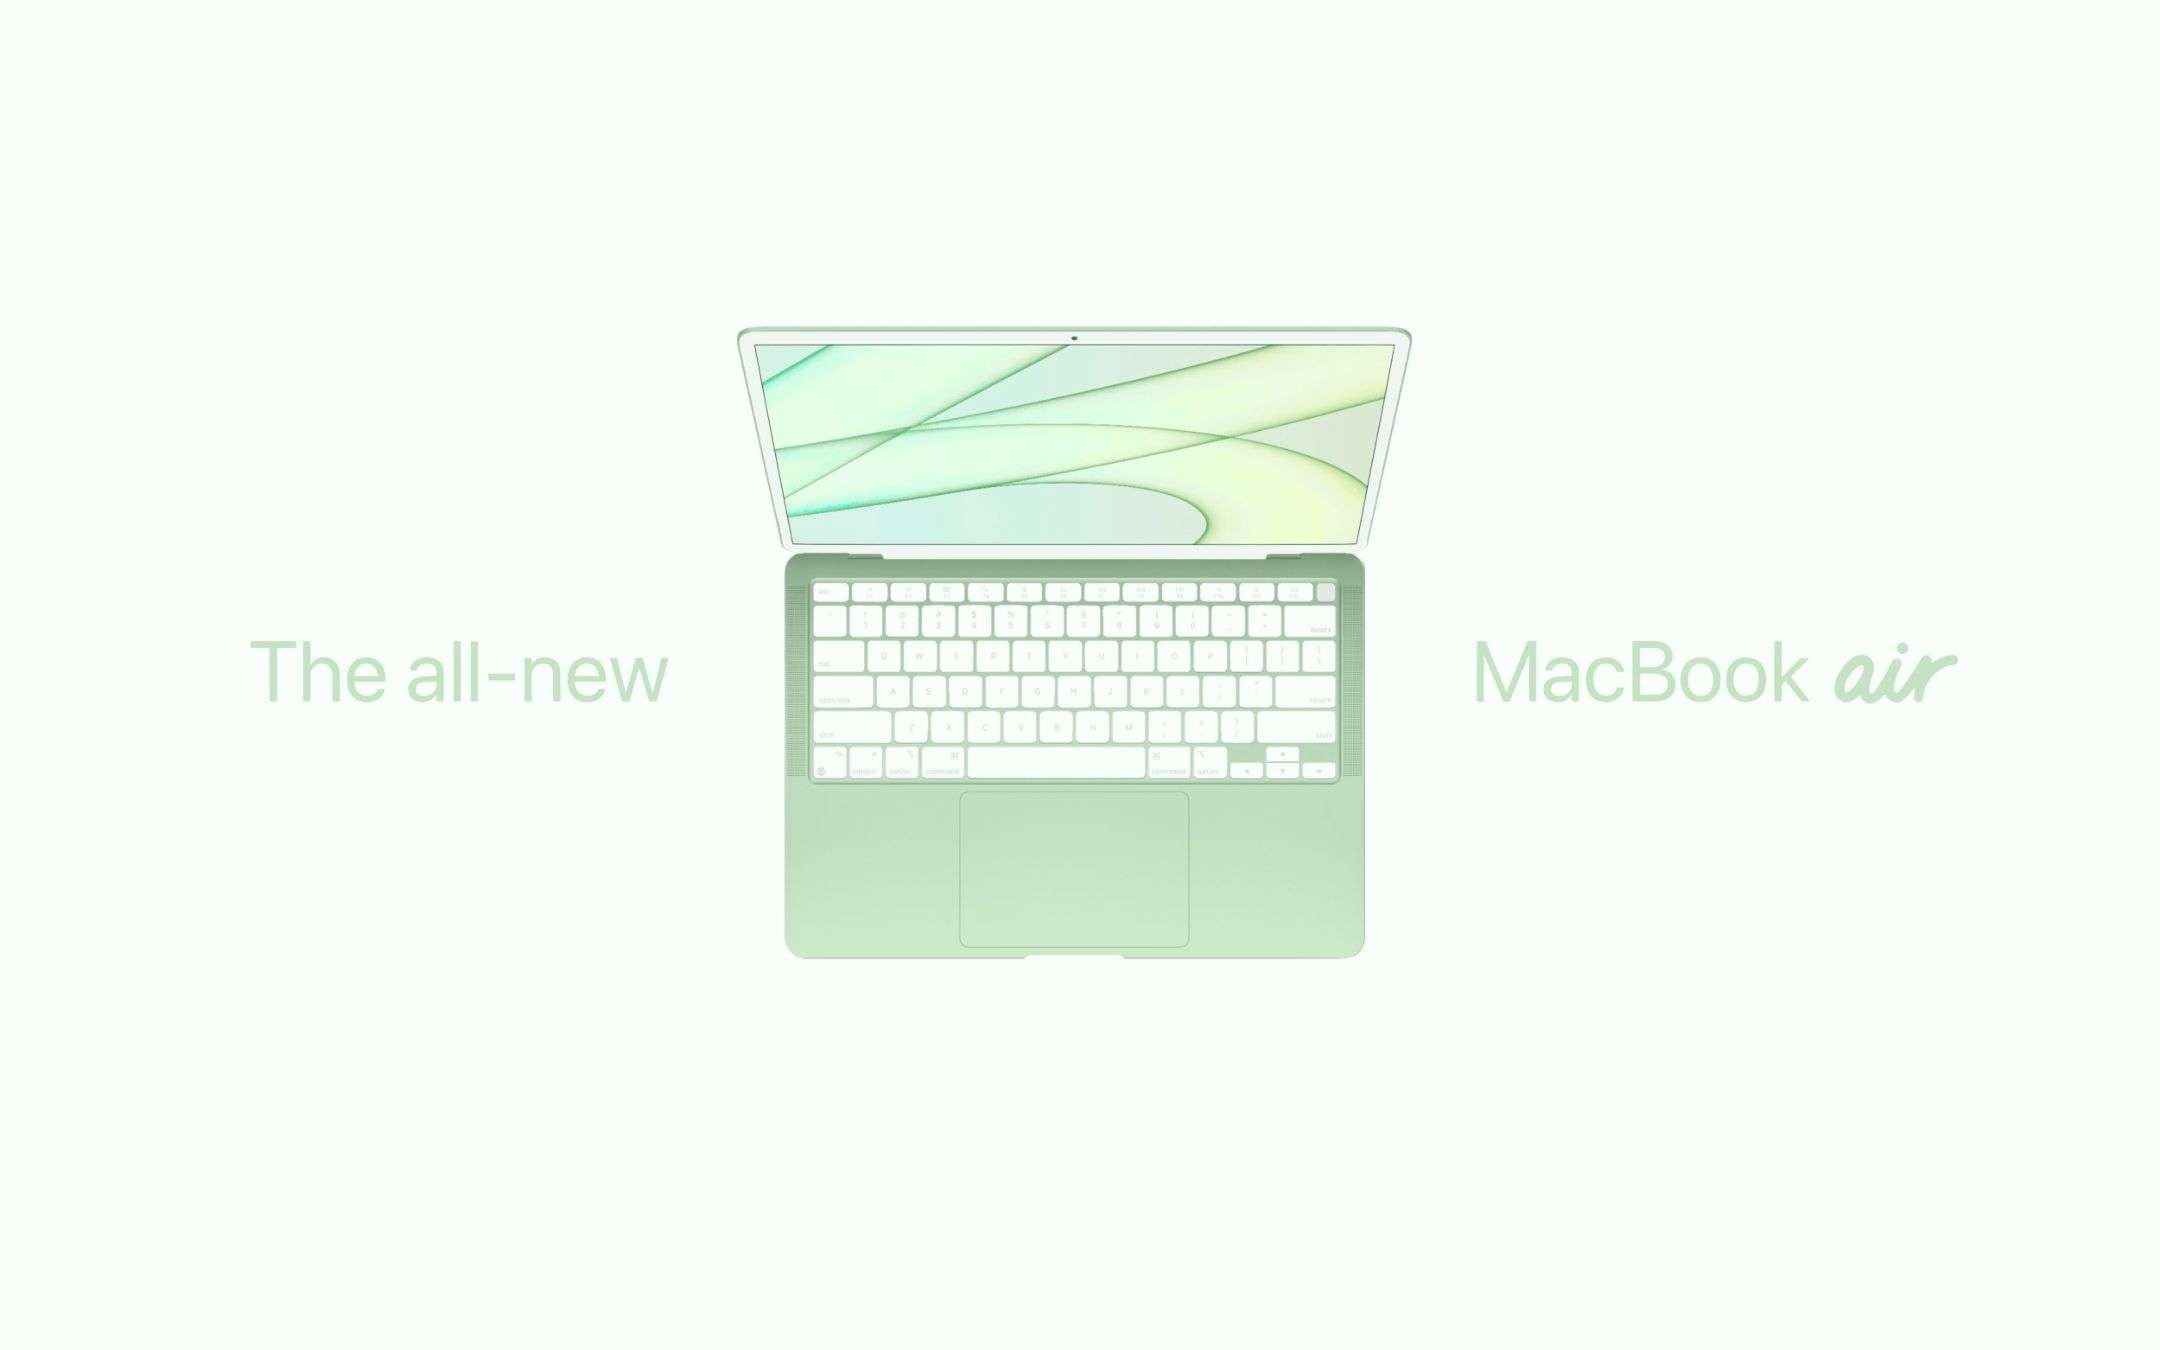 Comprare il MacBook Air 2020 o aspettare il nuovo modello?